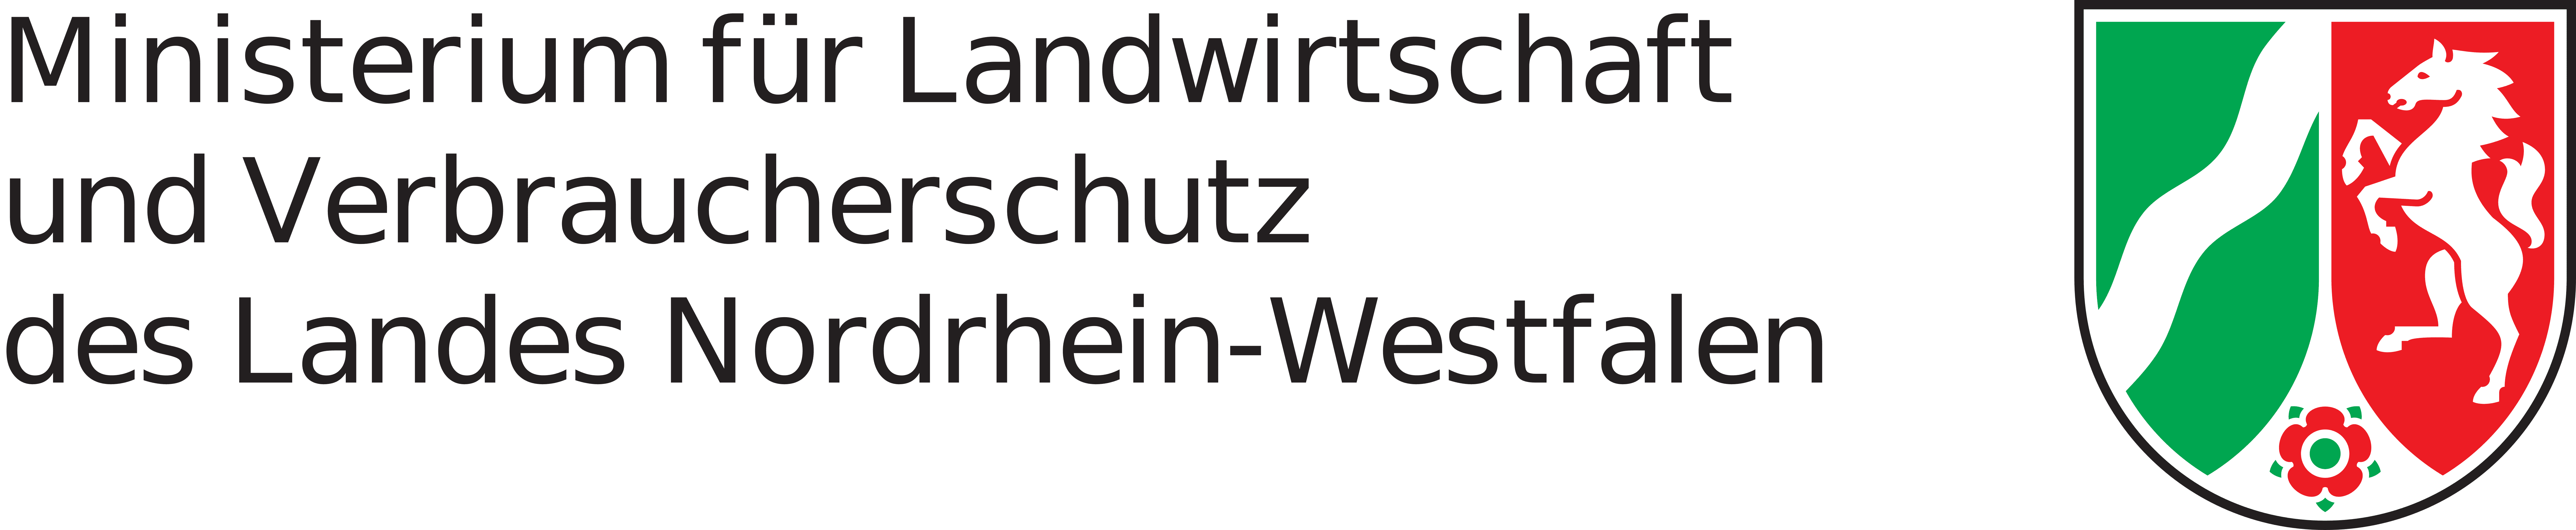 Wappen NRW mit Schriftzug Ministerium für Landwirtschaft und Verbraucherschutz